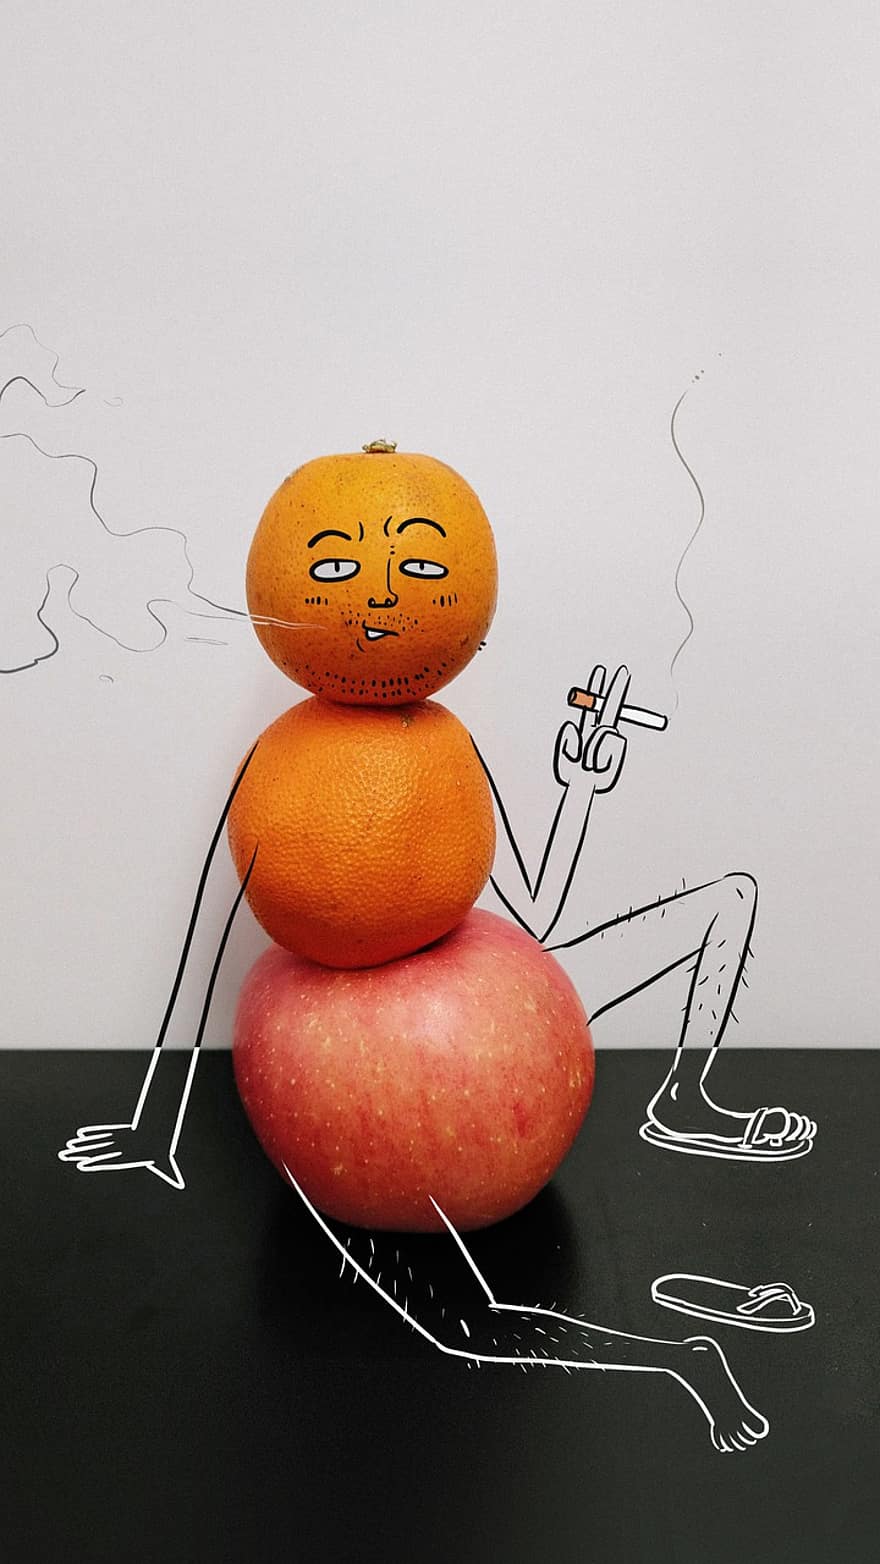 målning, kreativitet, frukt, äpple, orange, dekadent, rökning, medelålders